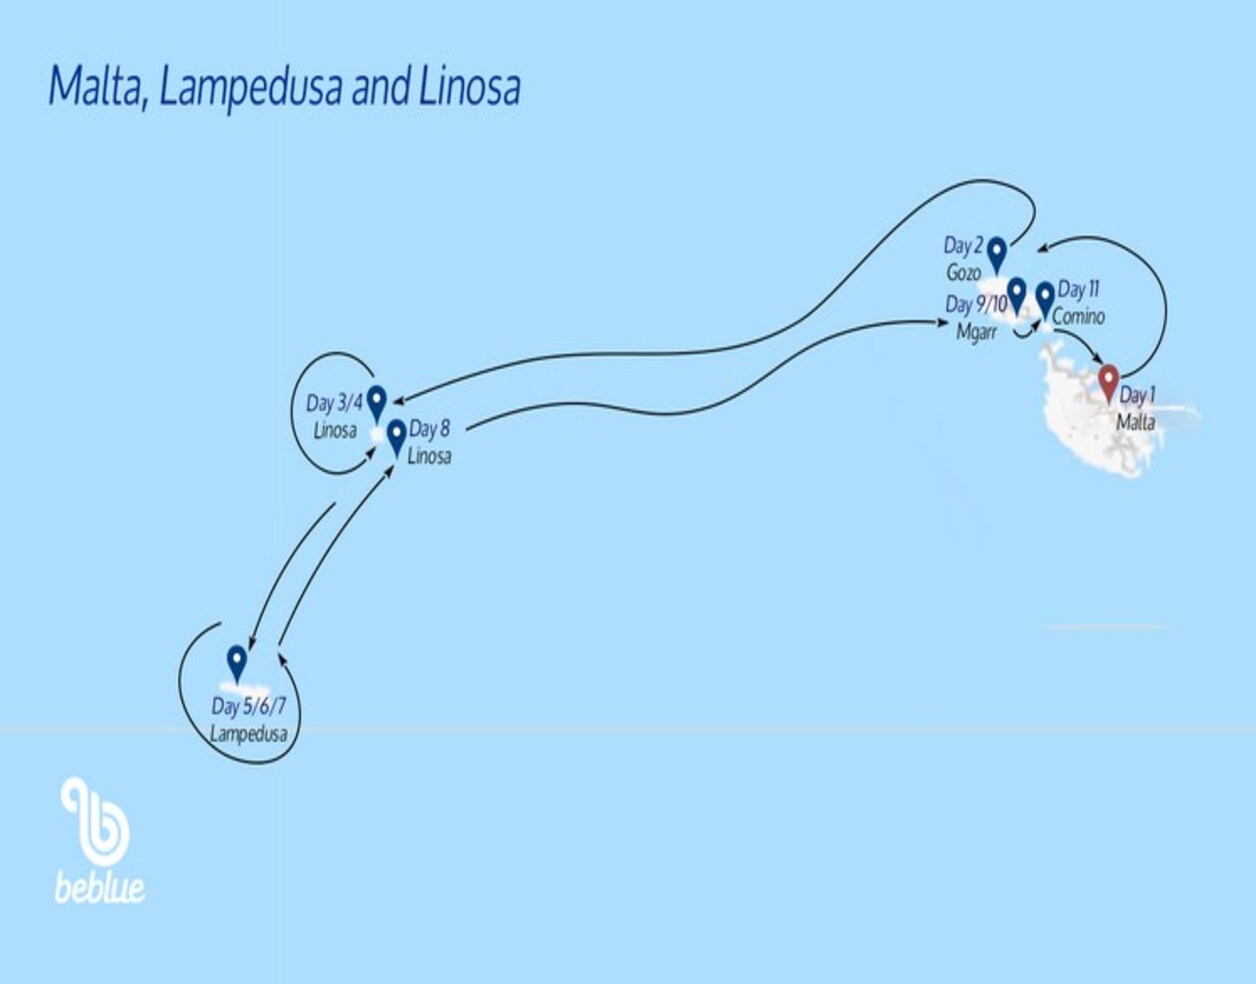 Flottiglia a Malta, Lampedusa e Linosa - ID 135